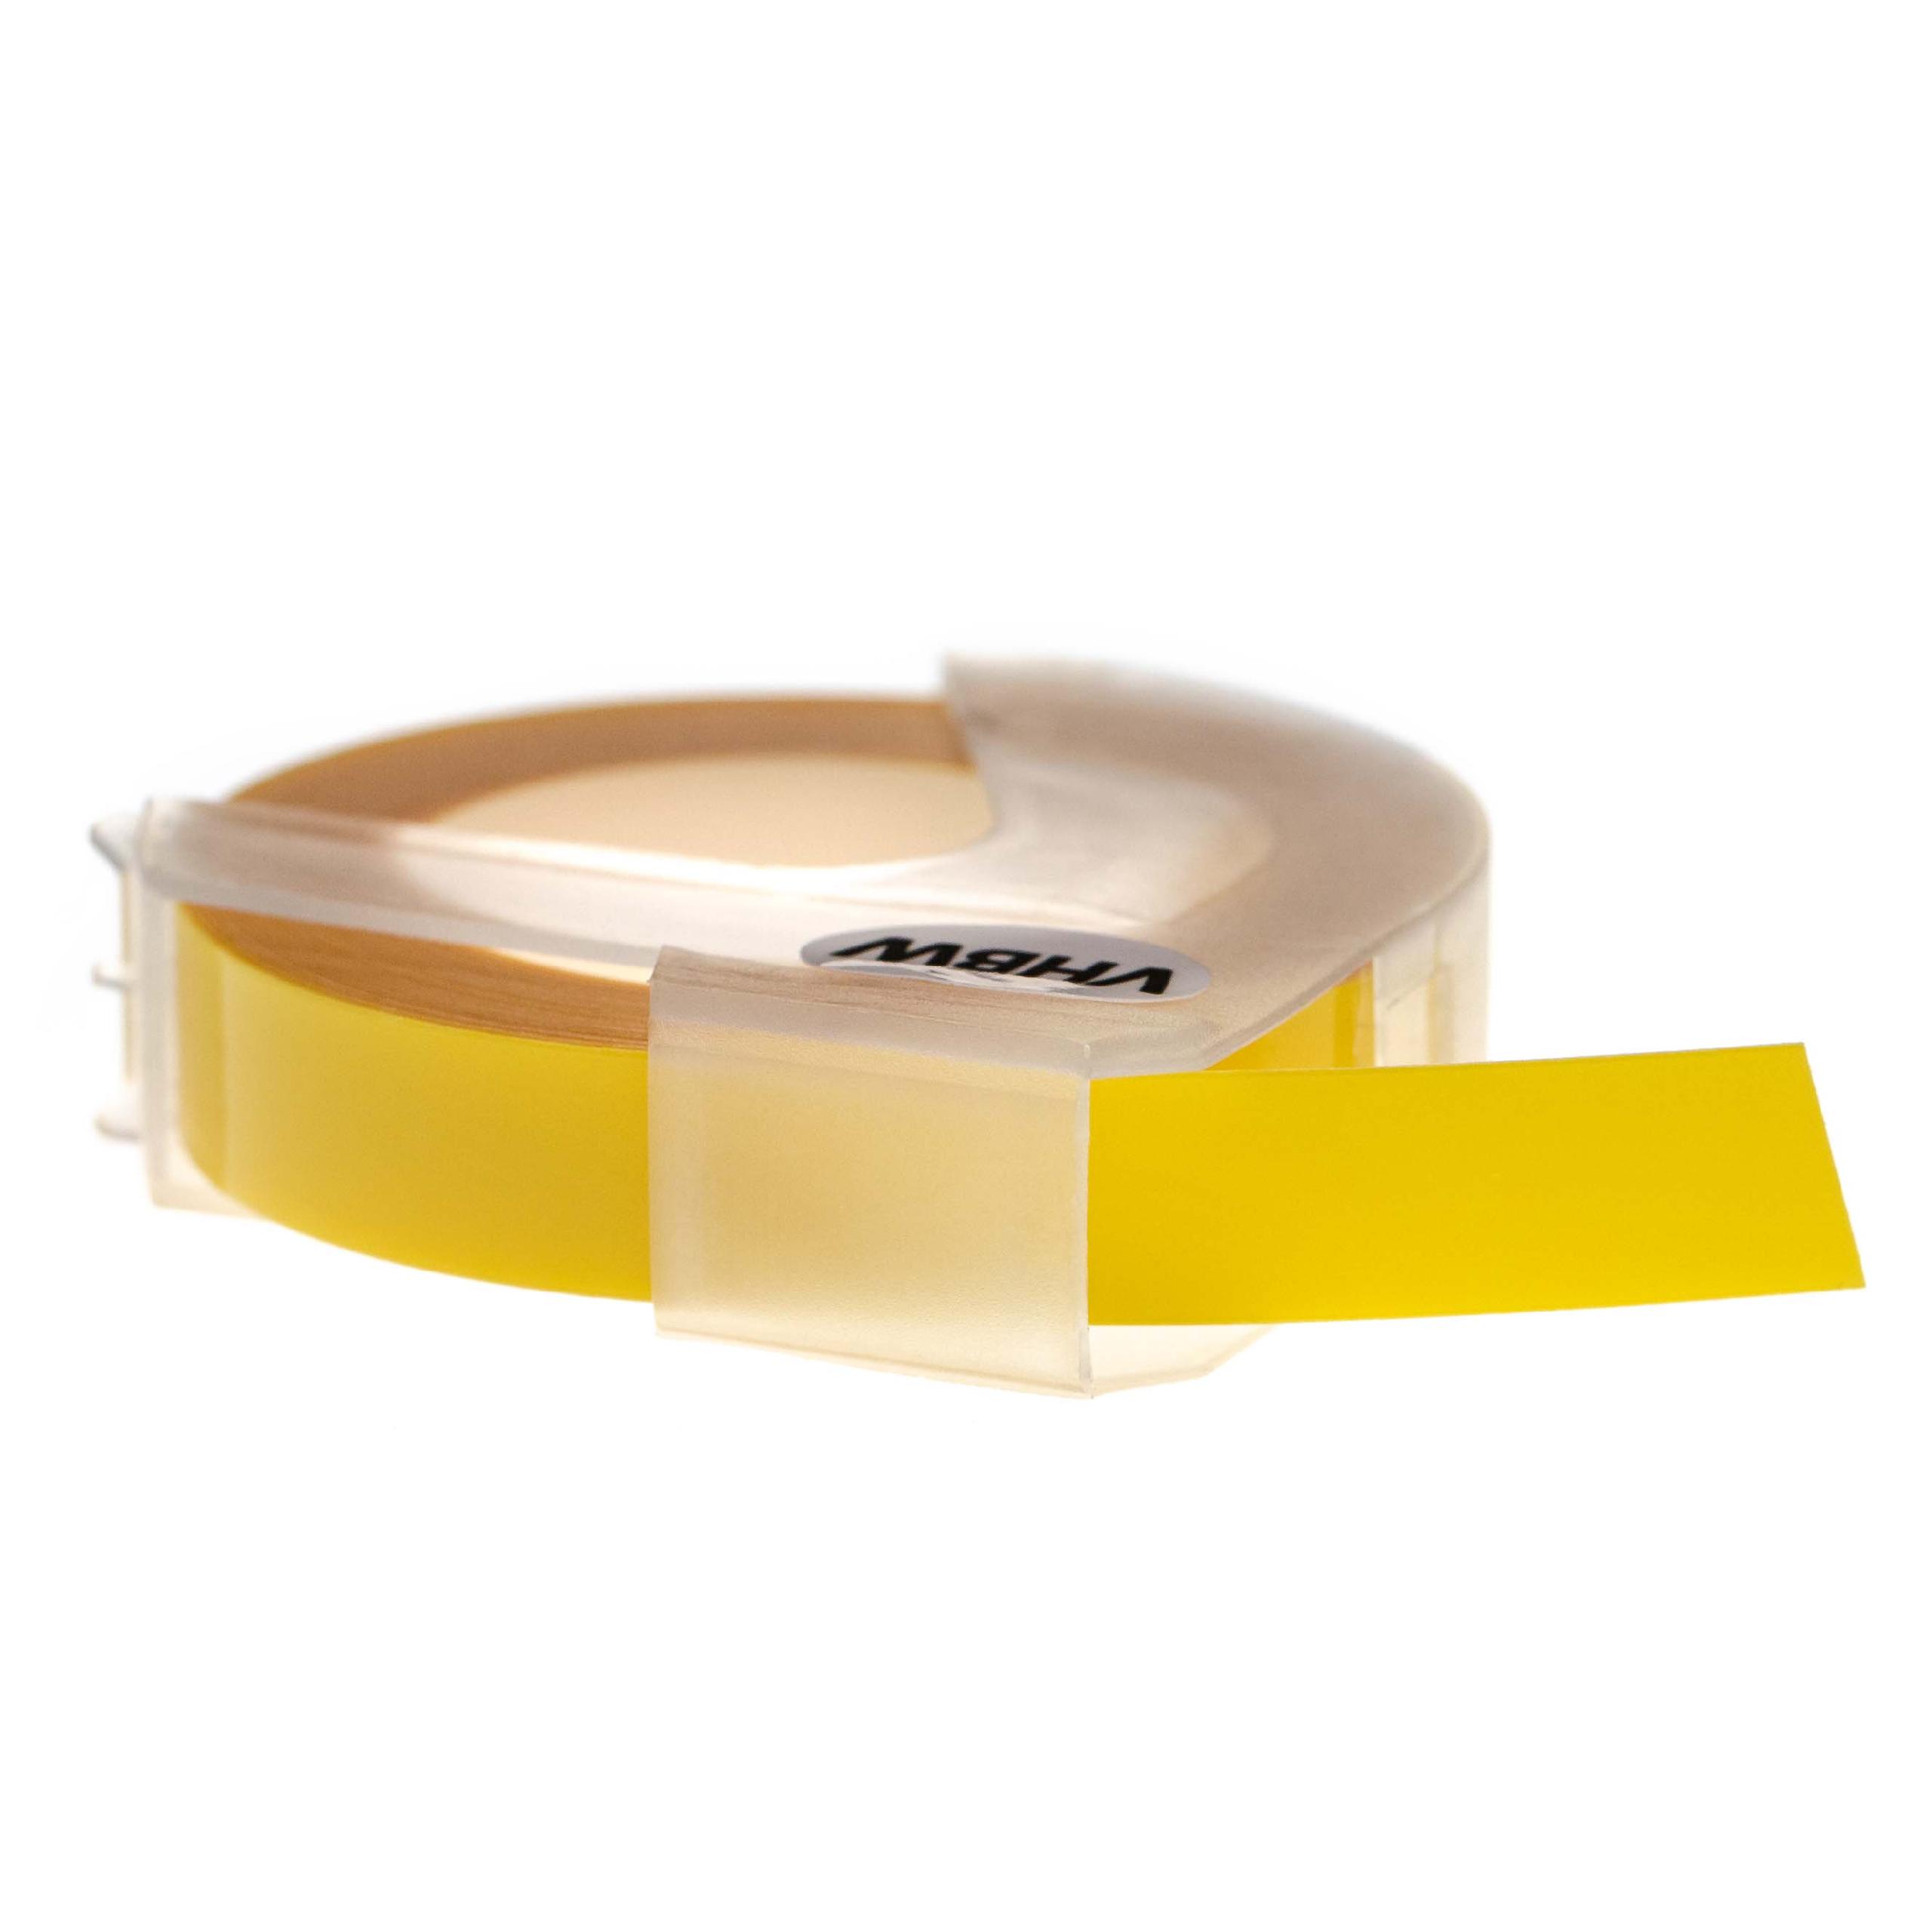 Nastro goffratura 3D sostituisce Dymo 0898220, S0898220 per etichettatrice Motex 9mm bianco su giallo chiaro